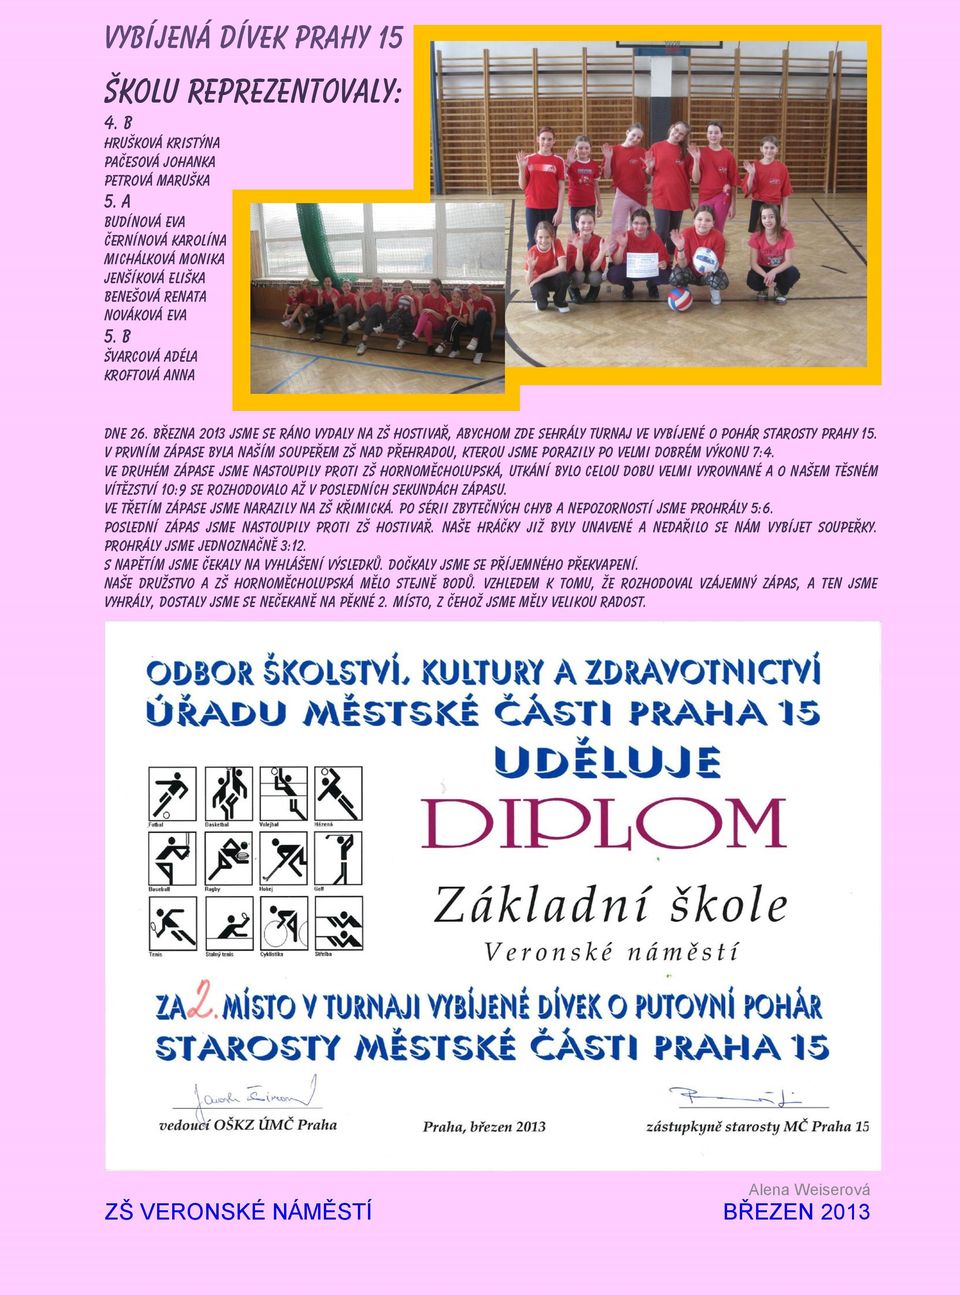 Března 2013 jsme se ráno vydaly na ZŠ Hostivař, abychom zde sehrály turnaj ve vybíjené O pohár starosty Prahy 15.